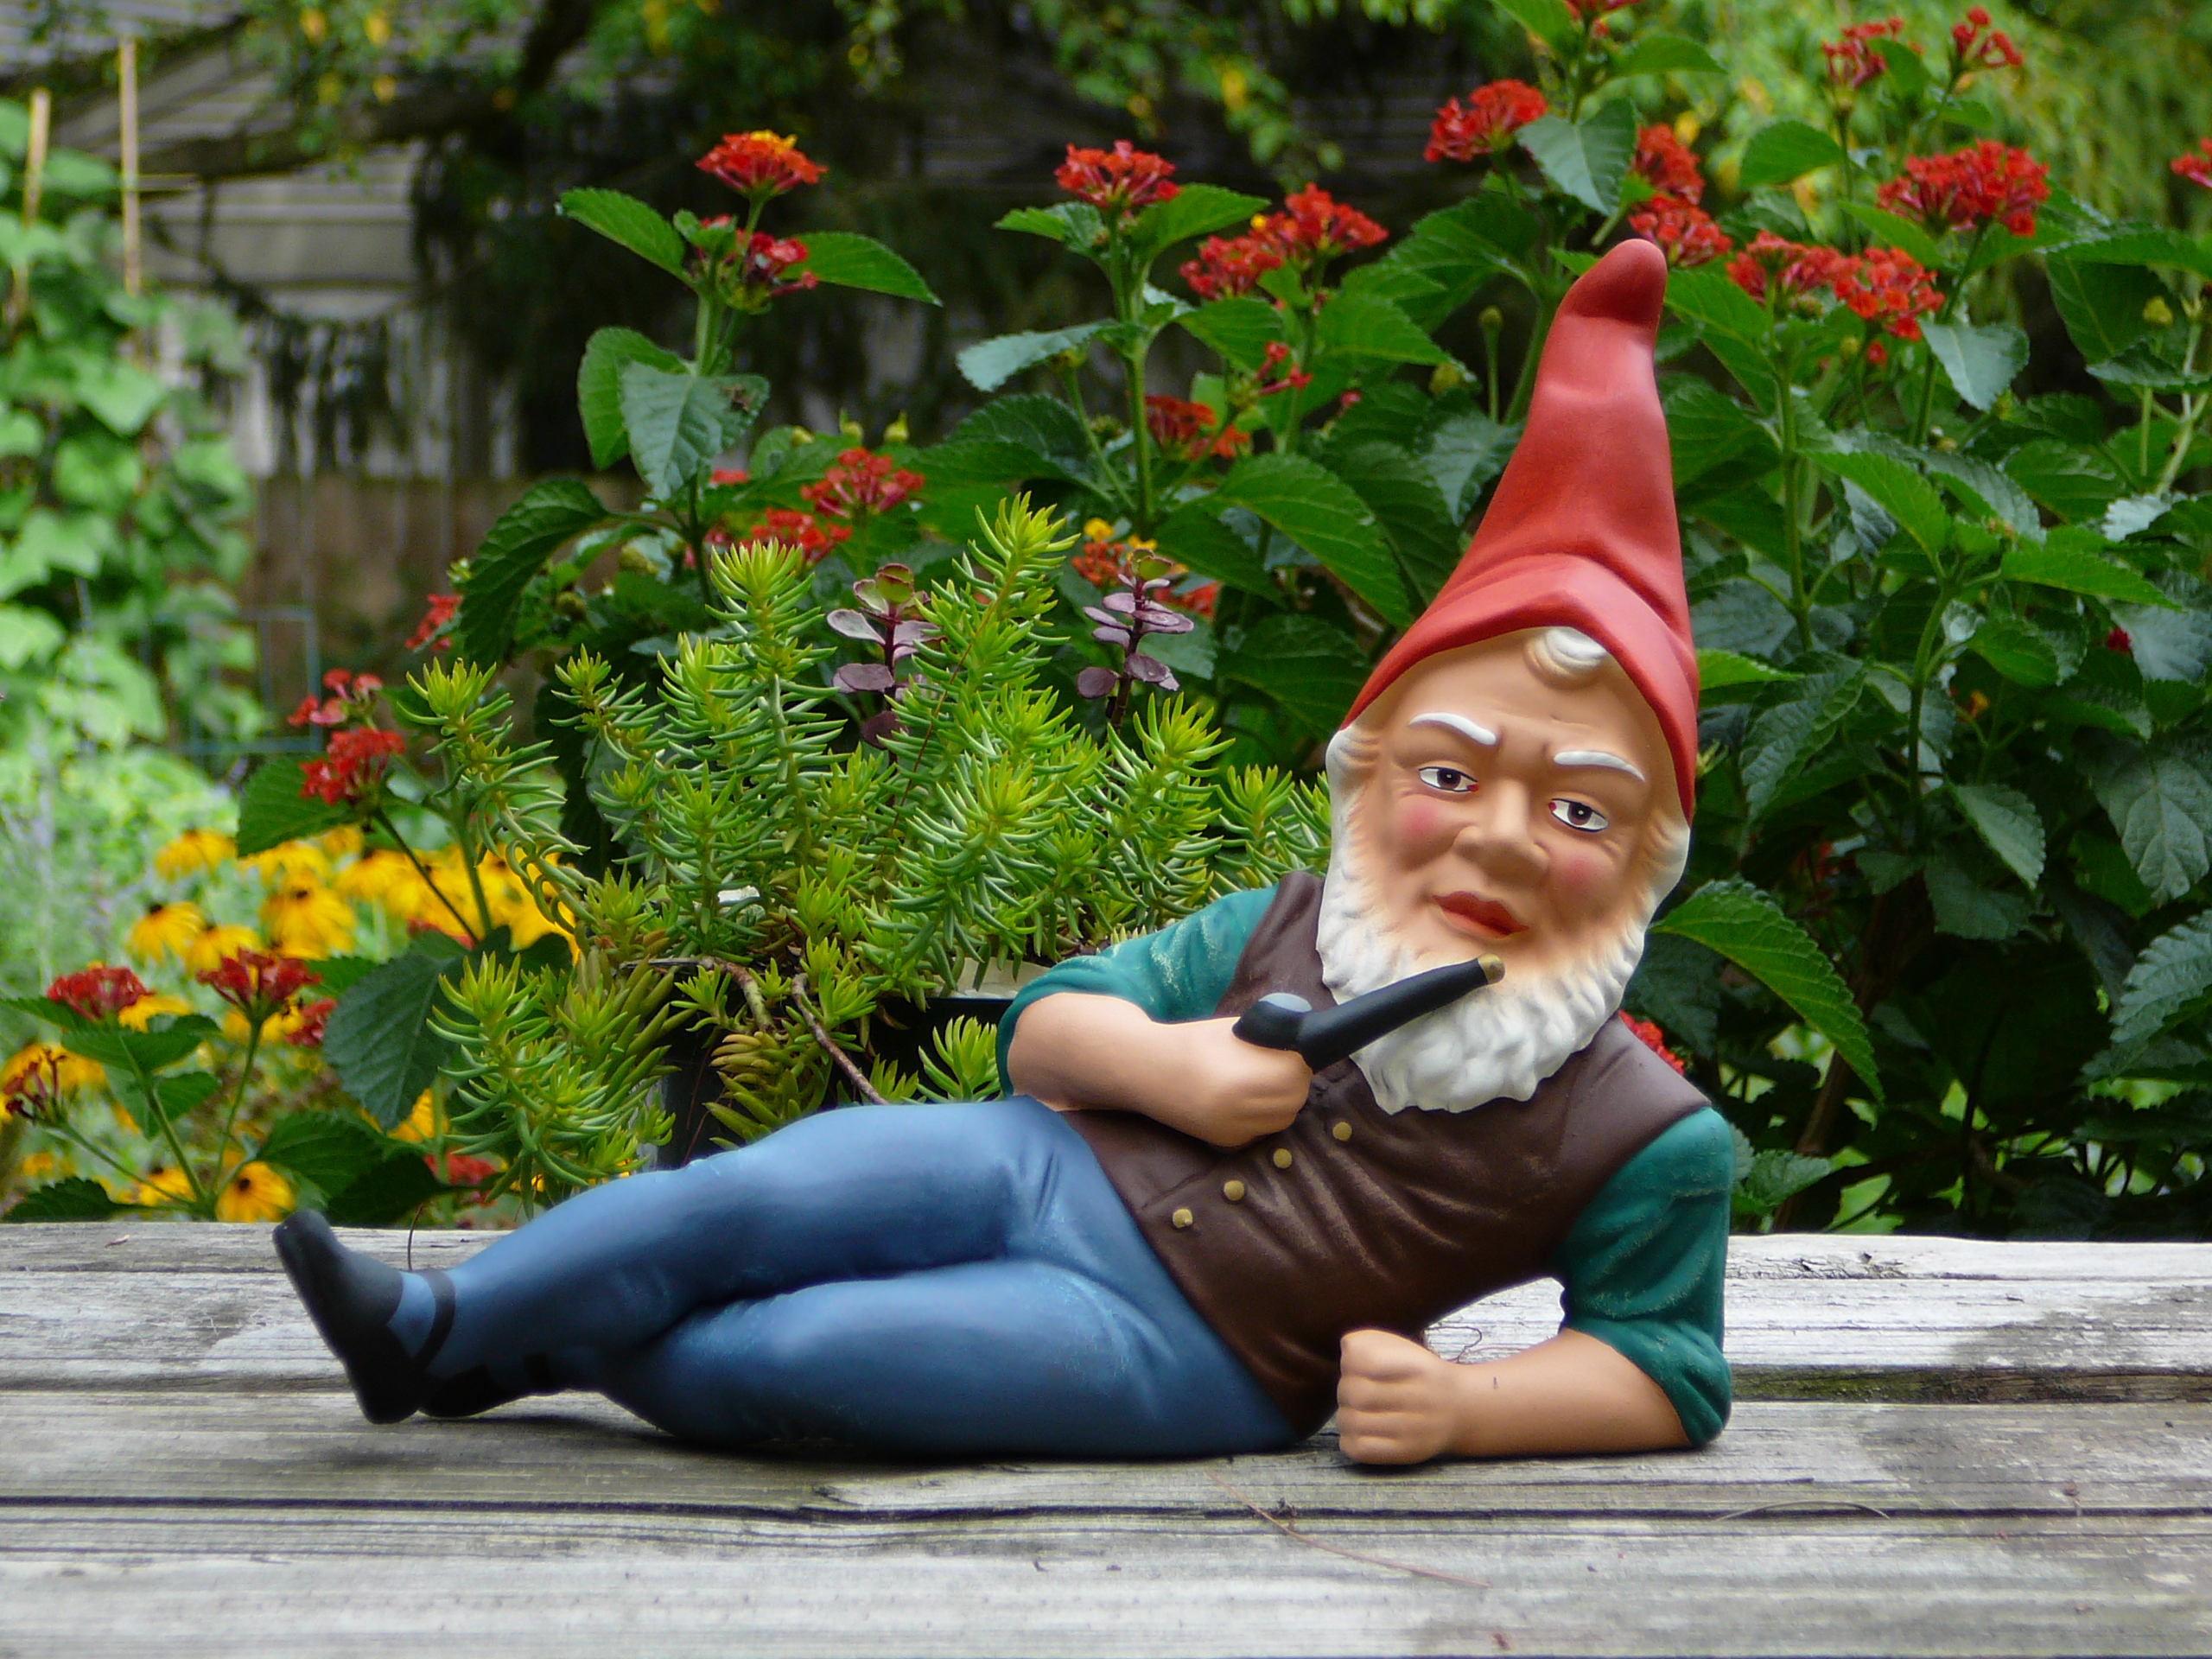 Garden Gnome Statue 2560x1920